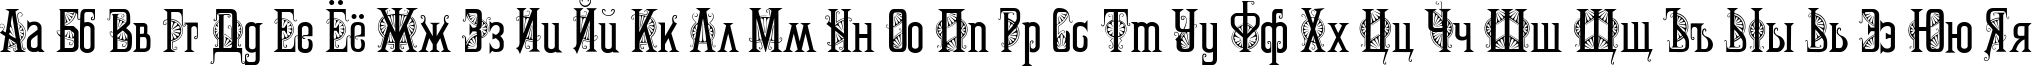 Пример написания русского алфавита шрифтом Marta Decor Two